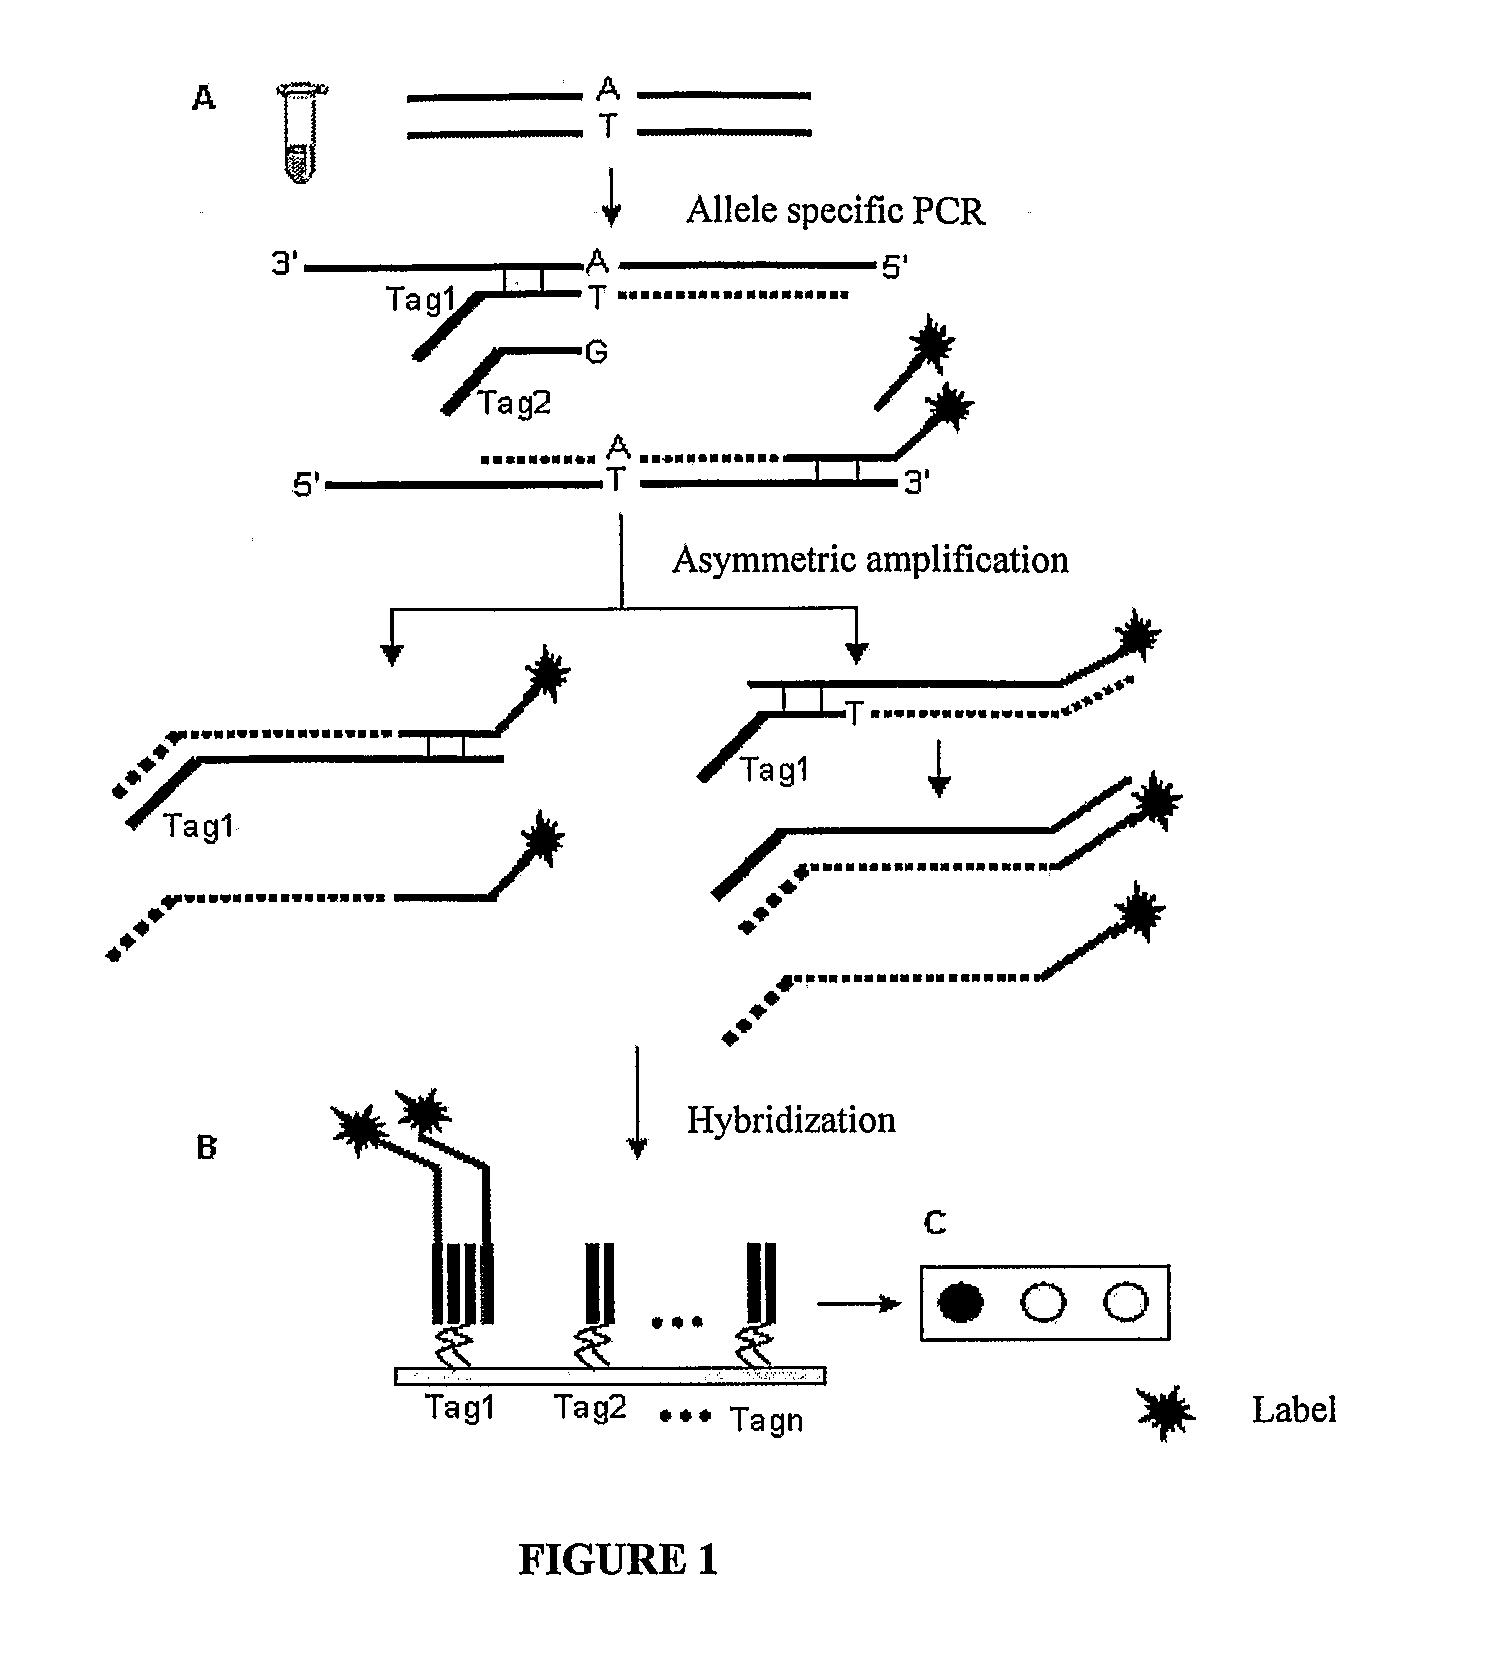 Methods for identification of alleles